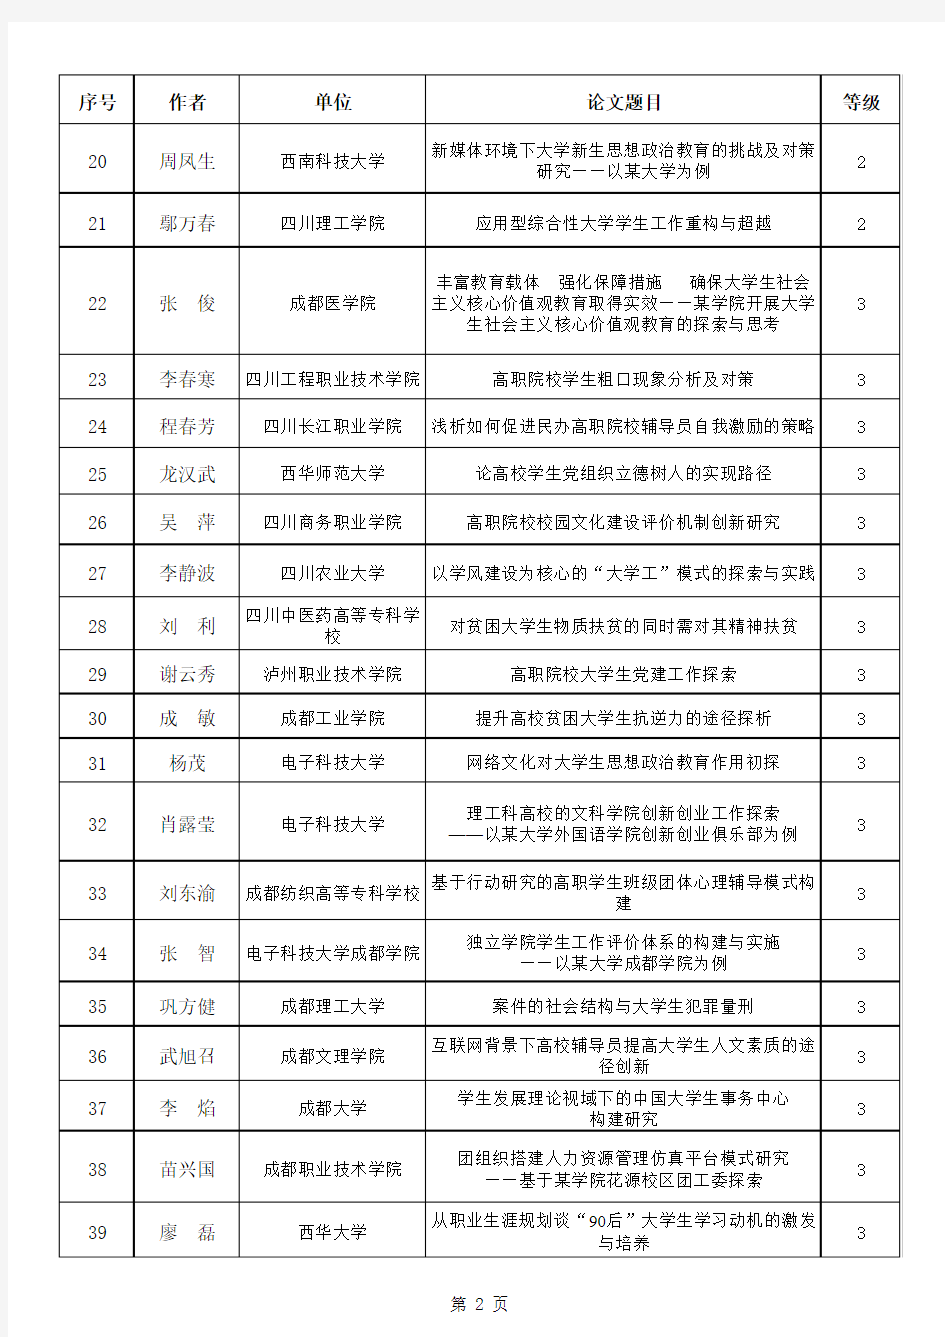 四川省高校学生思想政治工作研究会2015年年会优秀论文名单